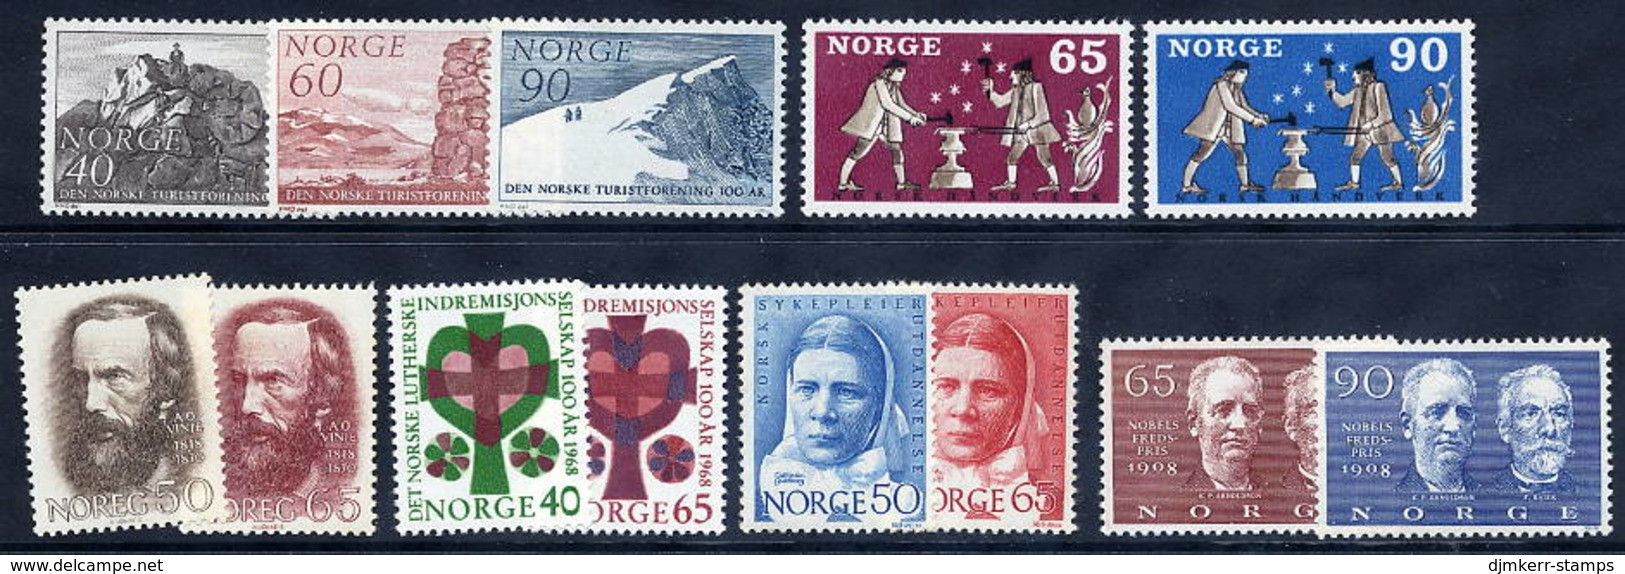 NORWAY 1968 Complete Commemorative Issues MNH / **. - Volledig Jaar